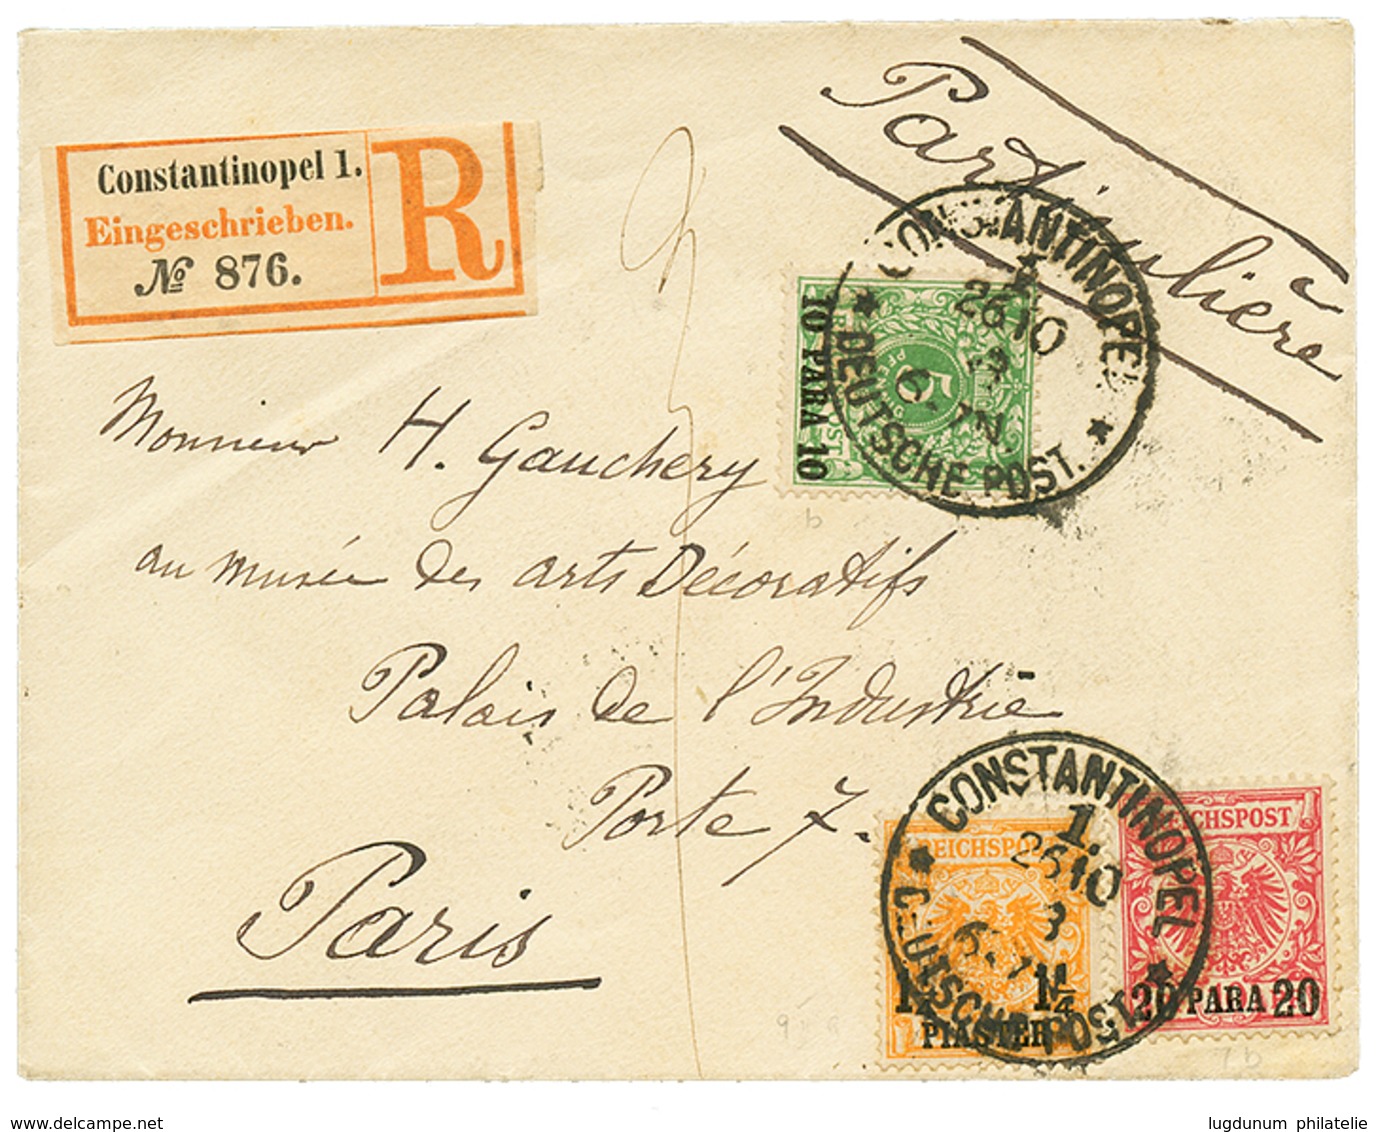 1134 1893 10p + 20p+ 1 1/4P Canc. CONSTANTINOPEL On REGISTERED Envelope To FRANCE. Signed JASCHKE. Vf. - Deutsche Post In Der Türkei